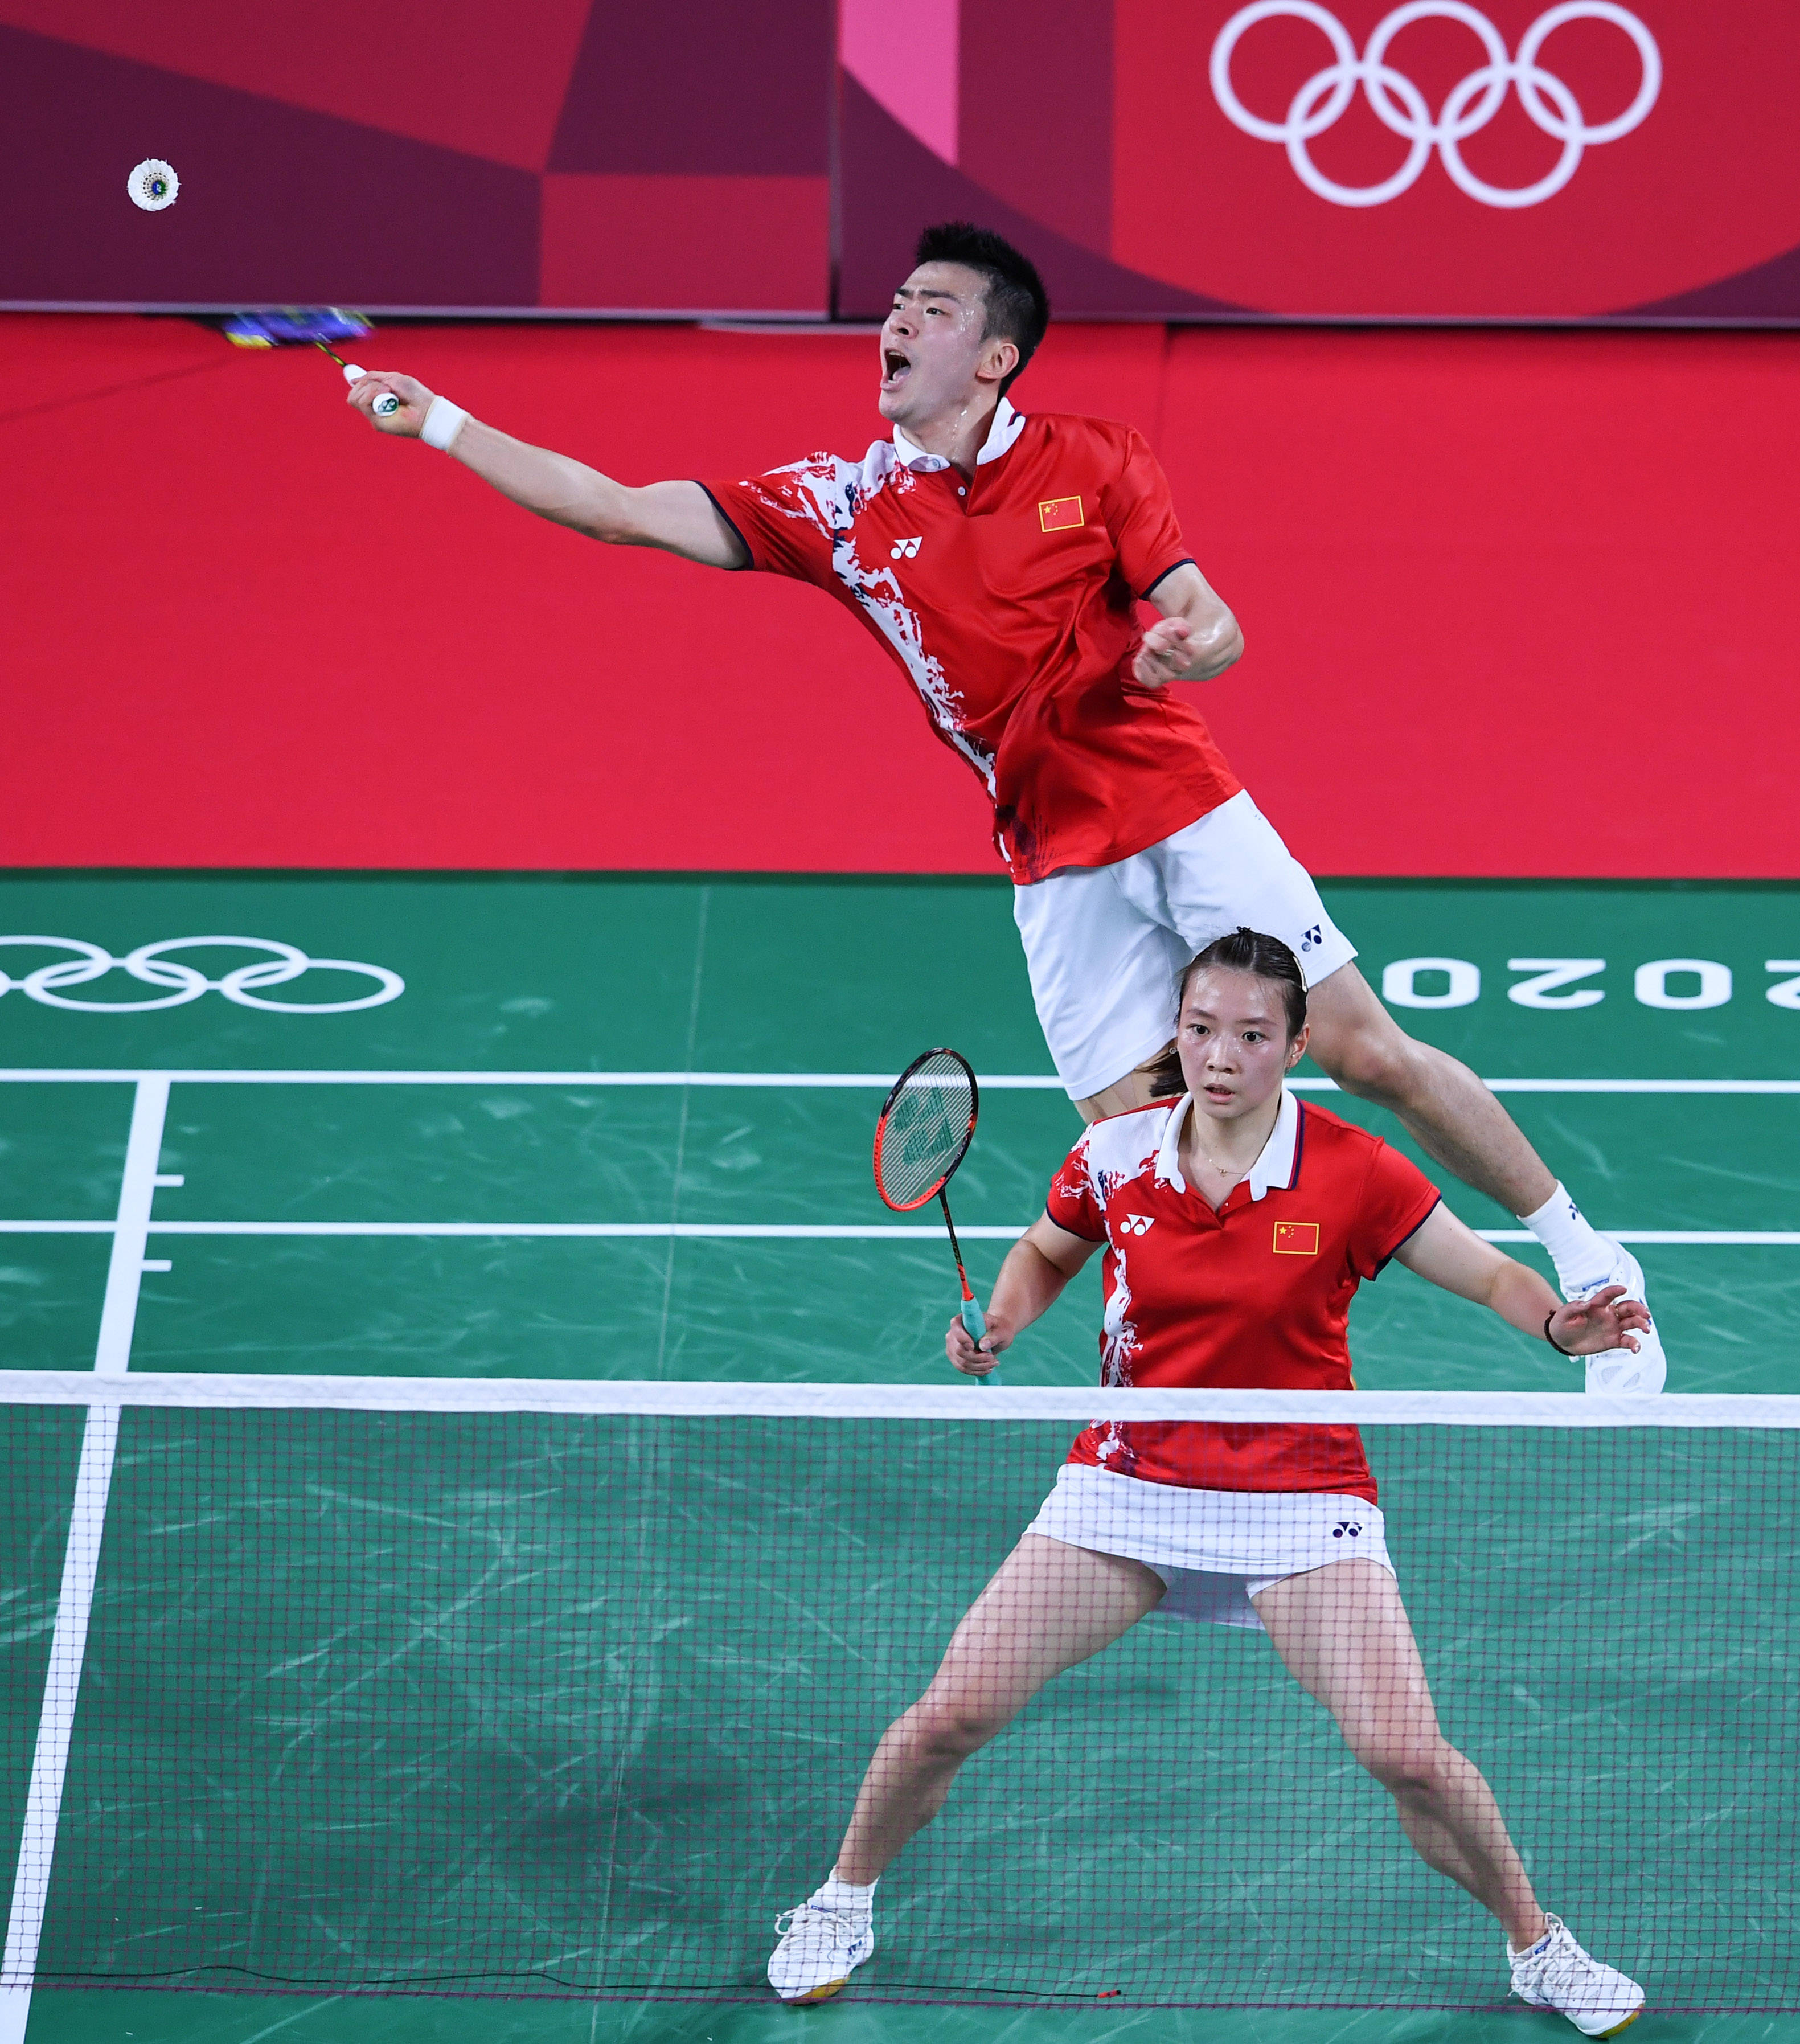 当日,在东京奥运会羽毛球混双小组赛中,中国选手郑思维/黄雅琼战胜